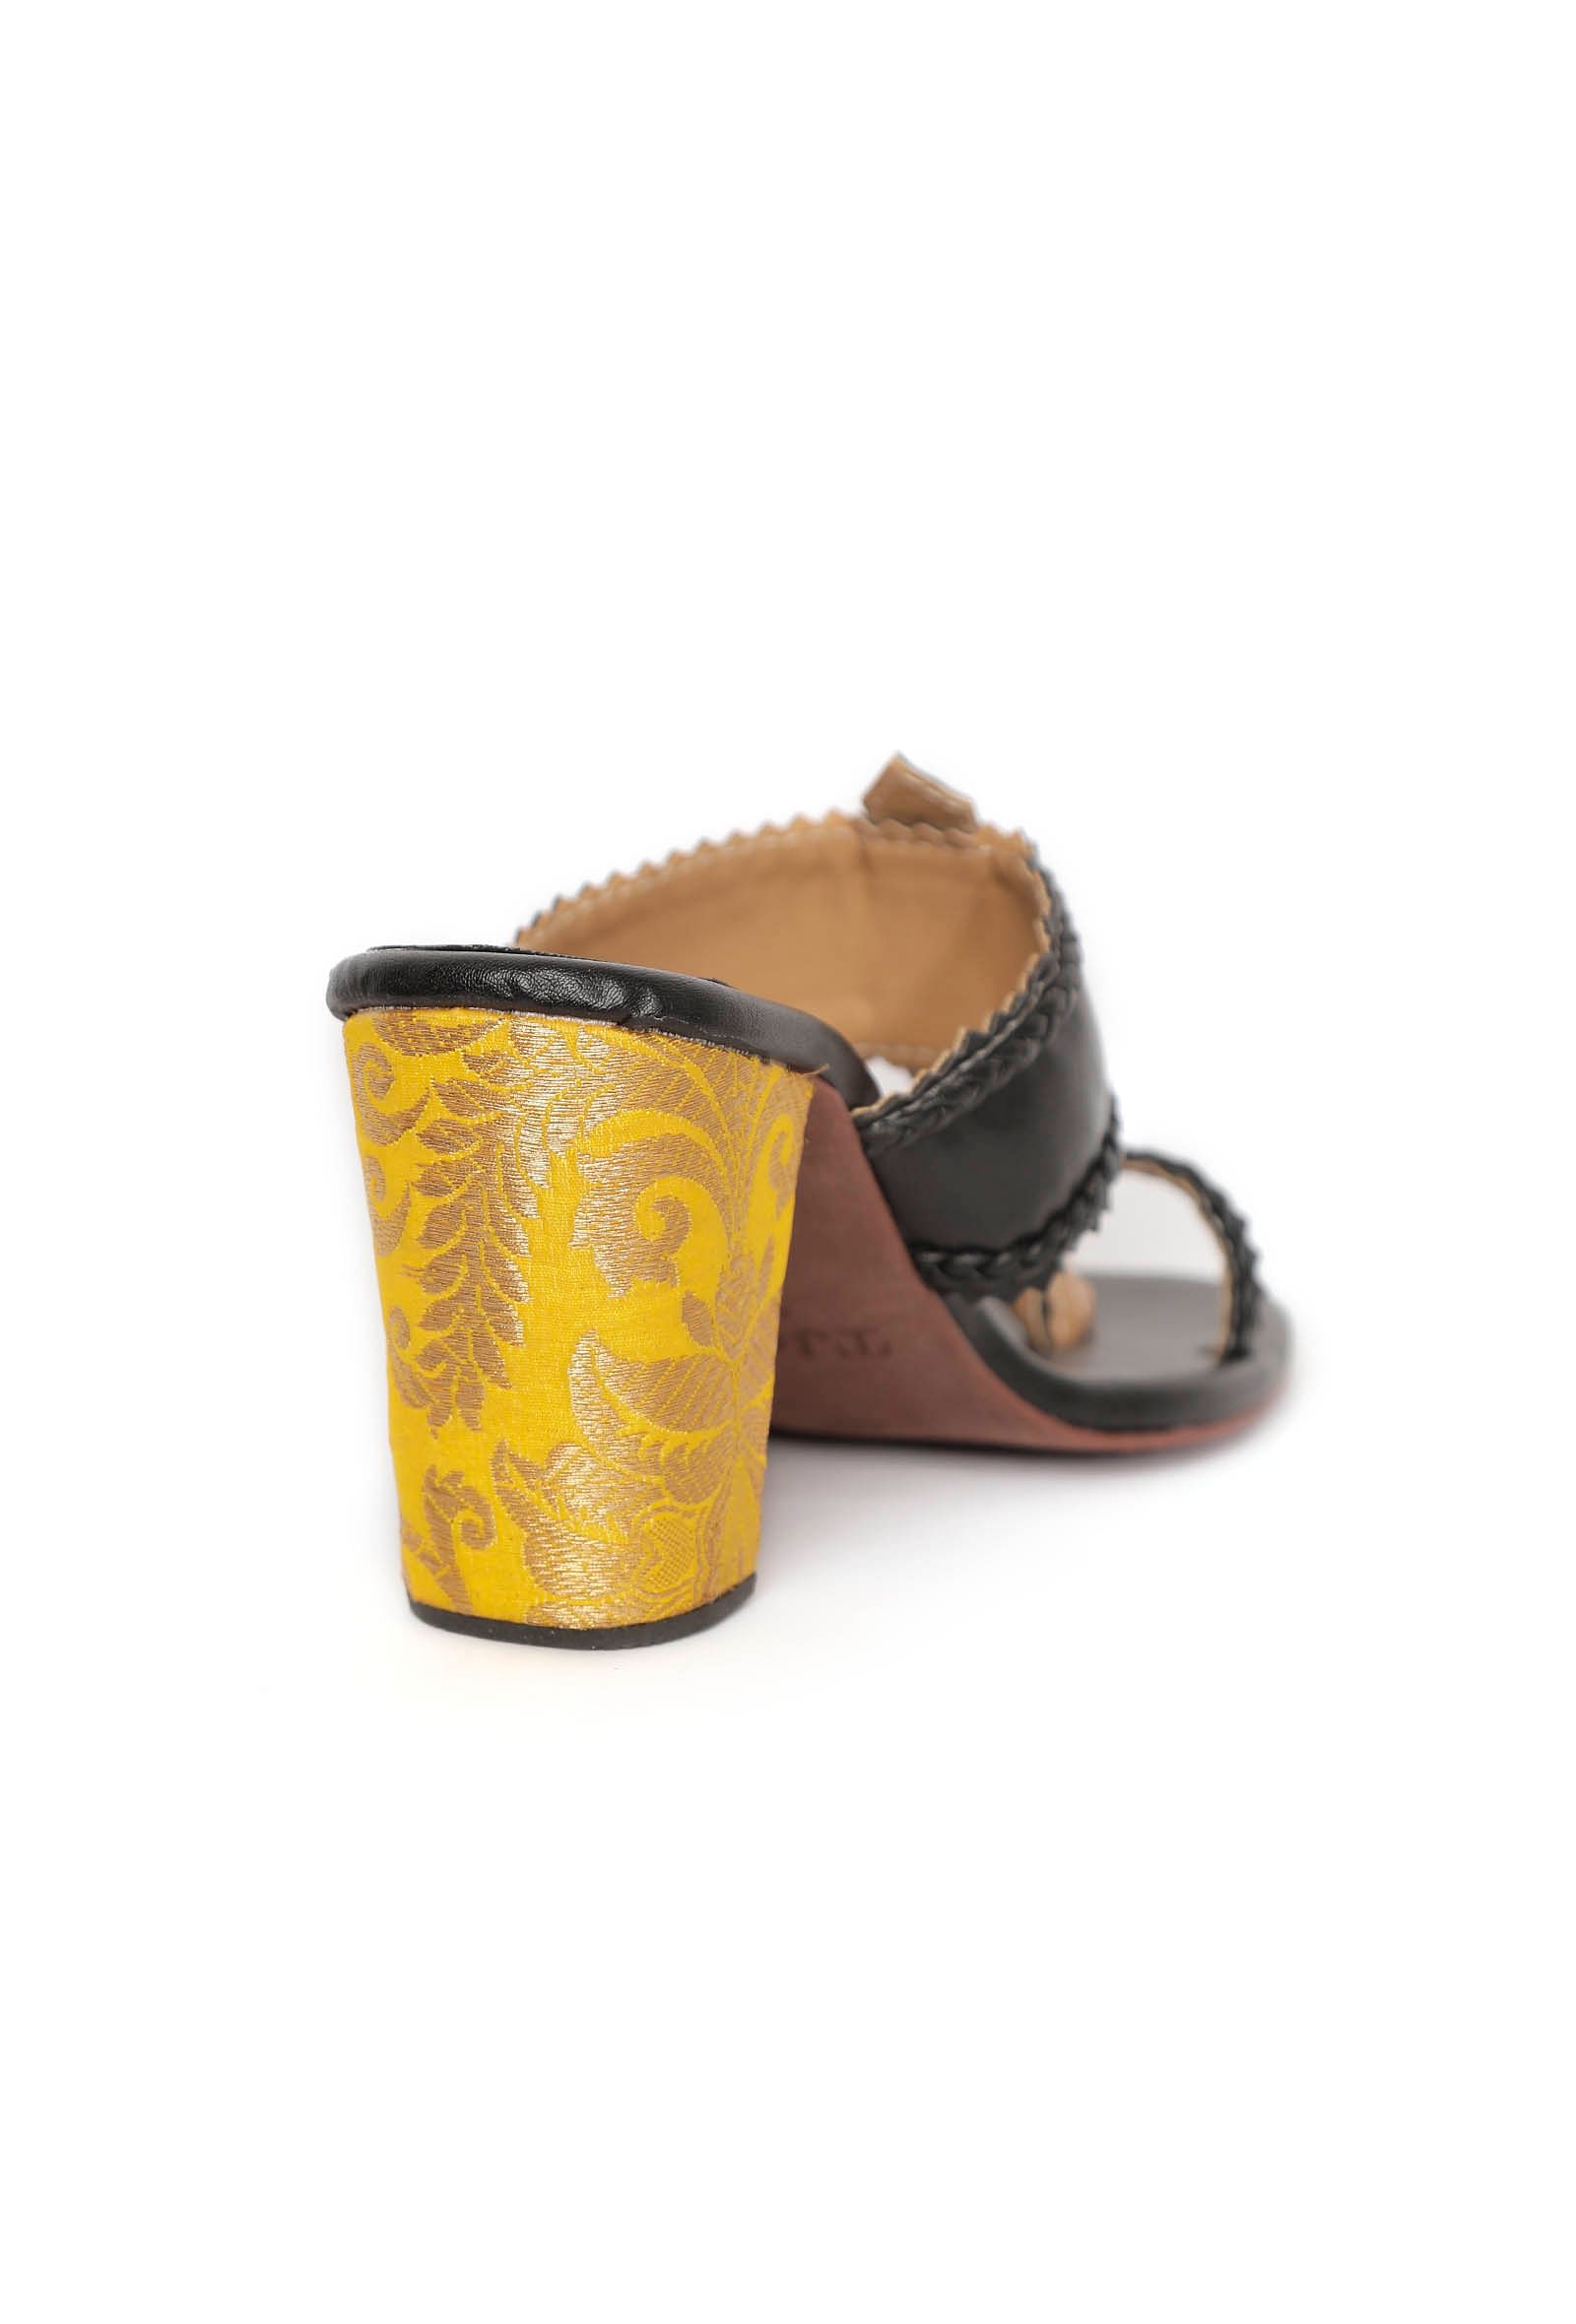 Charcoal Black with Yellow Brocade Kolhapuri Inspired Heels